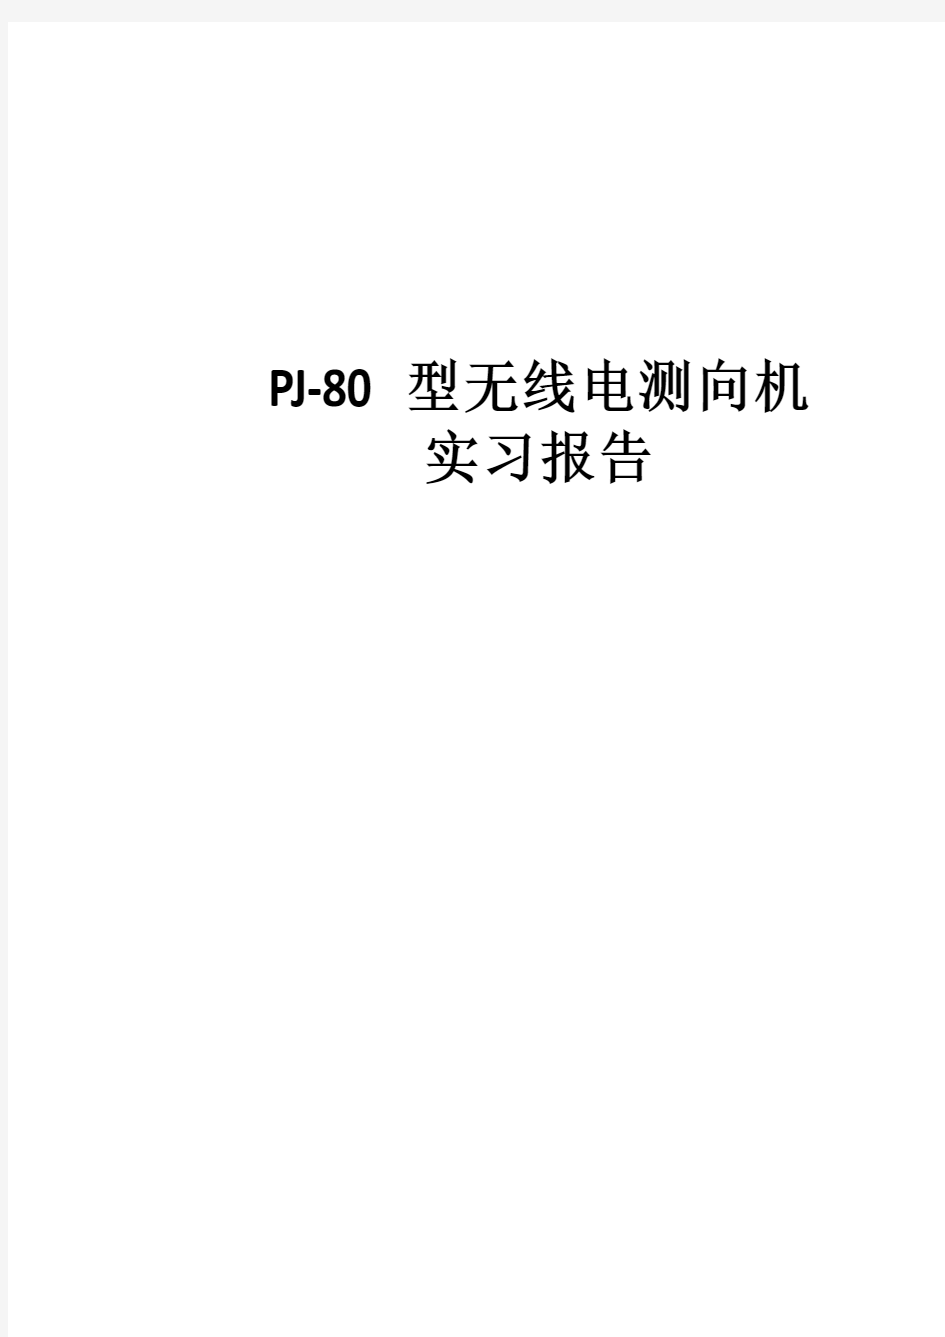 PJ-80型无线电测向机实验报告